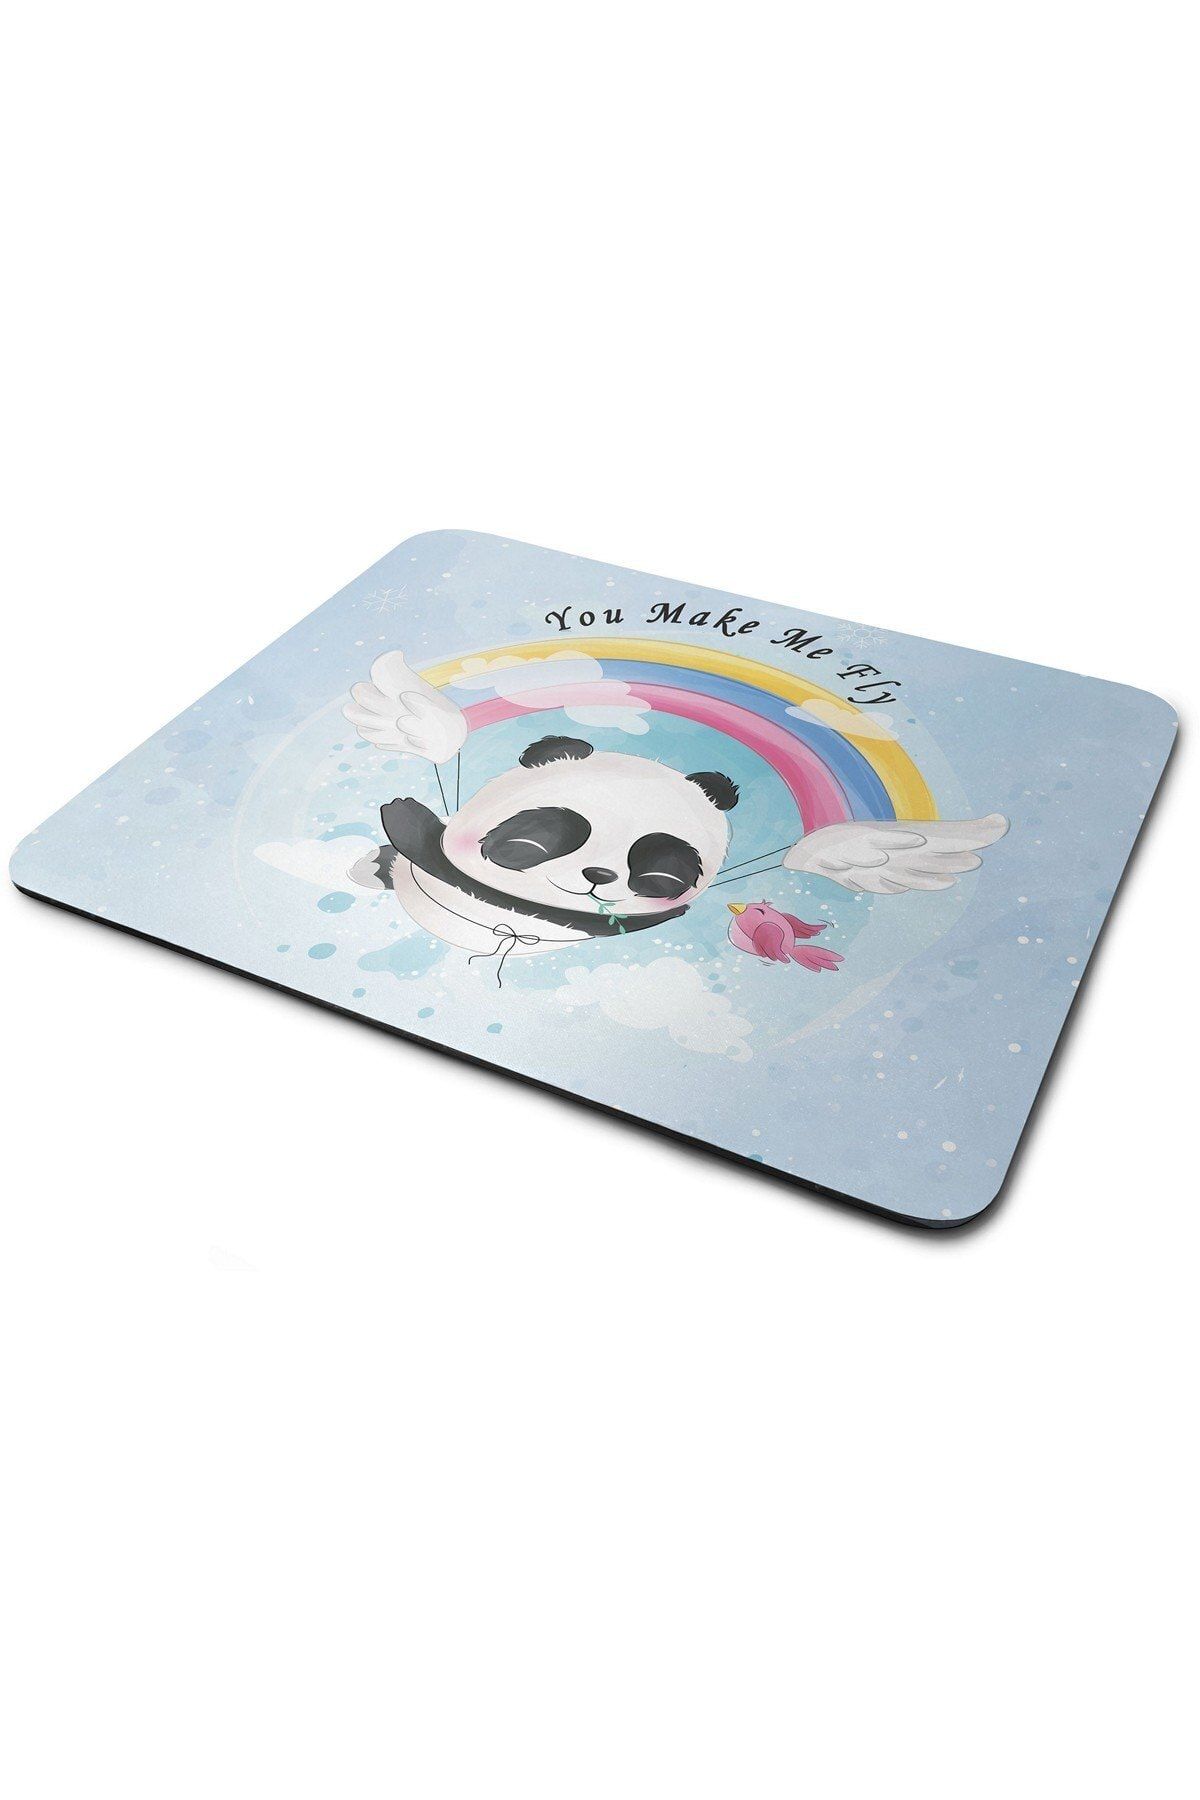 WuW Beni Uçuruyorsun Panda Desenli Dikdörtgen Mouse Pad